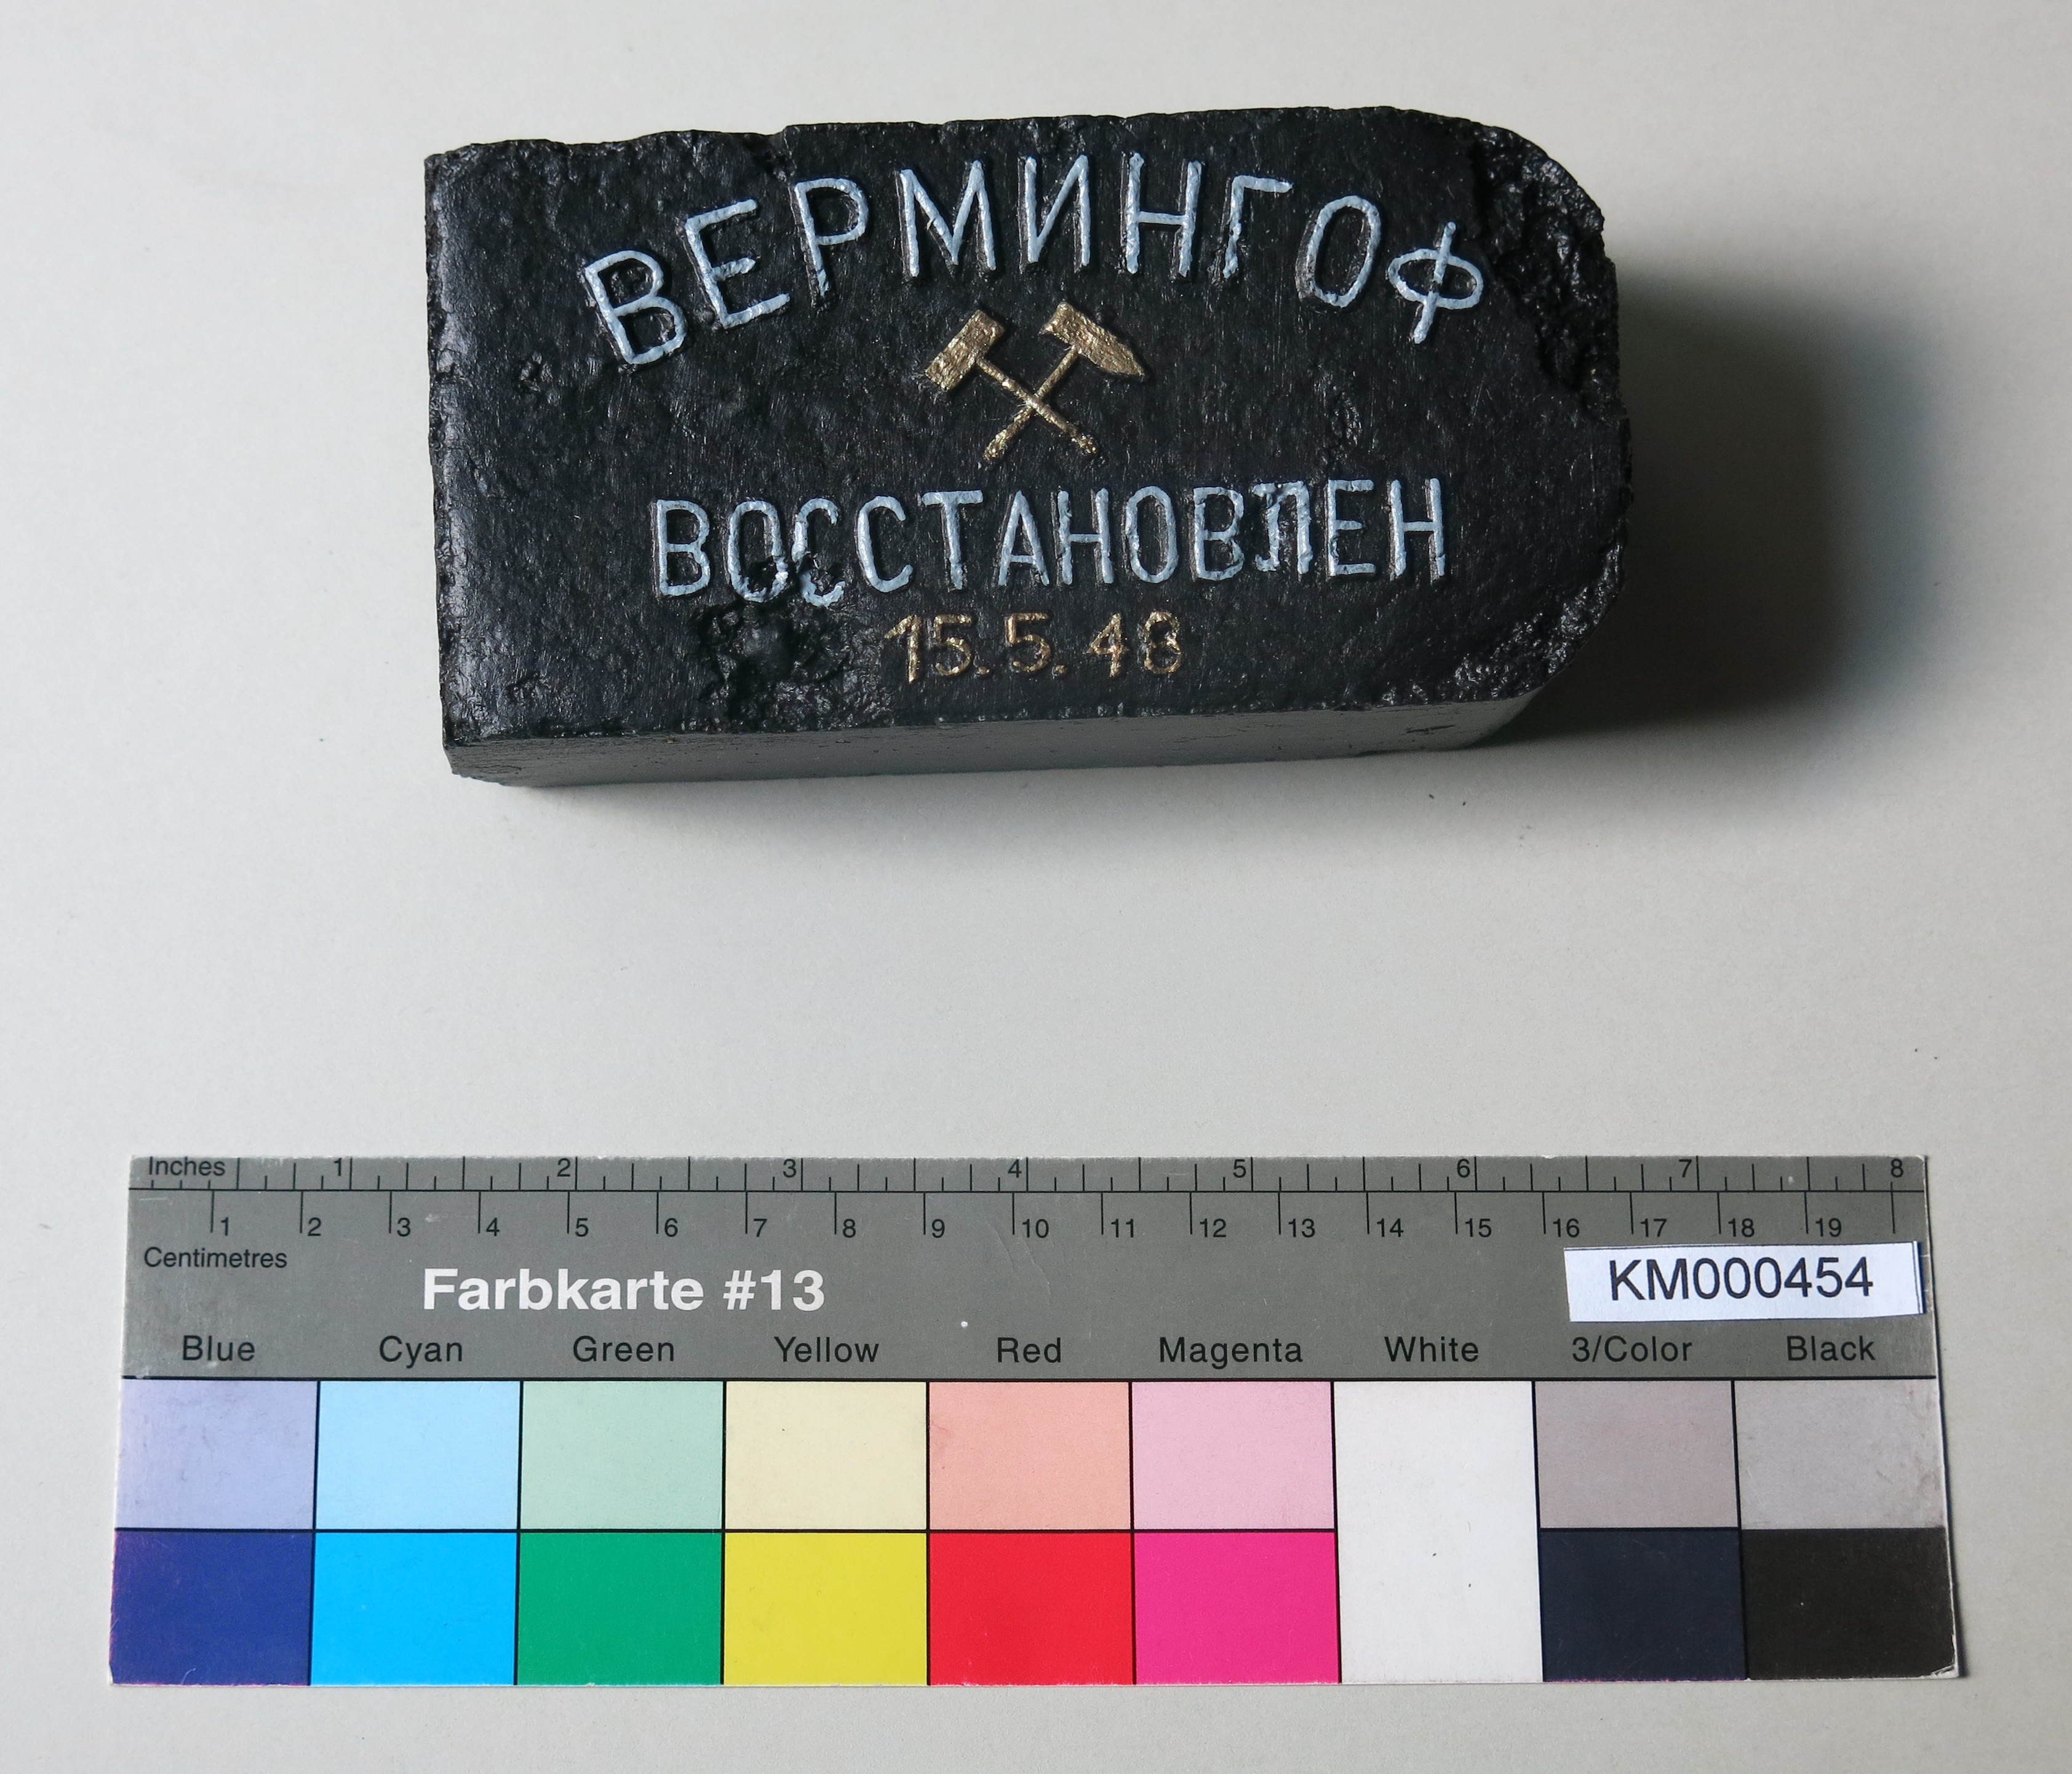 Zierbrikett "WERMINGOF BOCCTANOWLEN 15.5.46" (in kyrillischen Buchstaben) (Energiefabrik Knappenrode CC BY-SA)